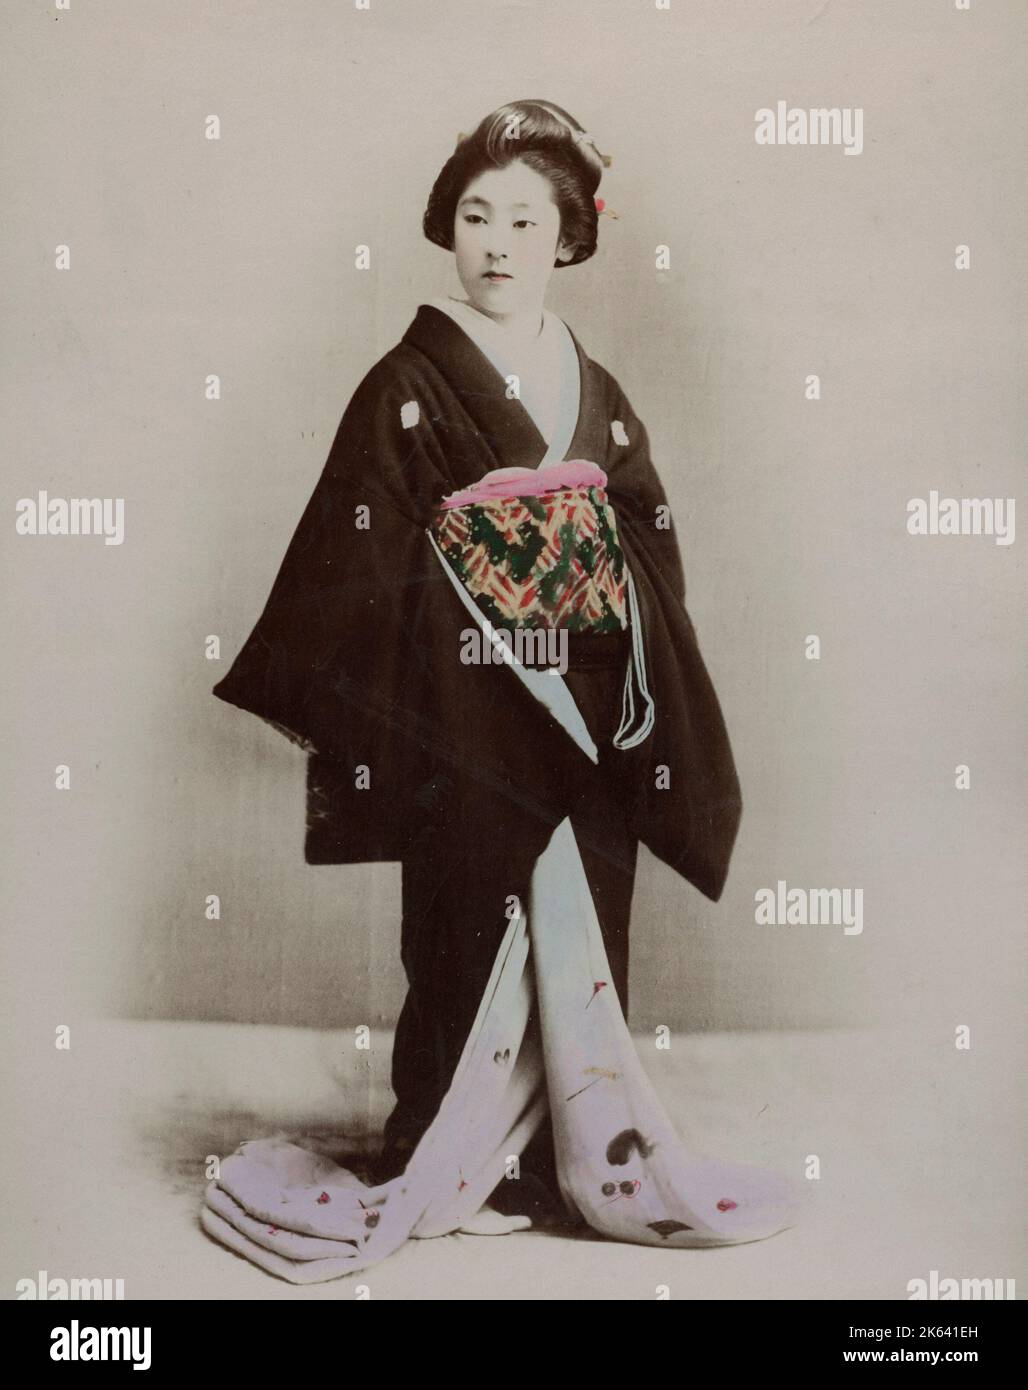 Japanische Frau in einem verzierten Kimono. Vintage 19. Jahrhundert Foto. Stockfoto